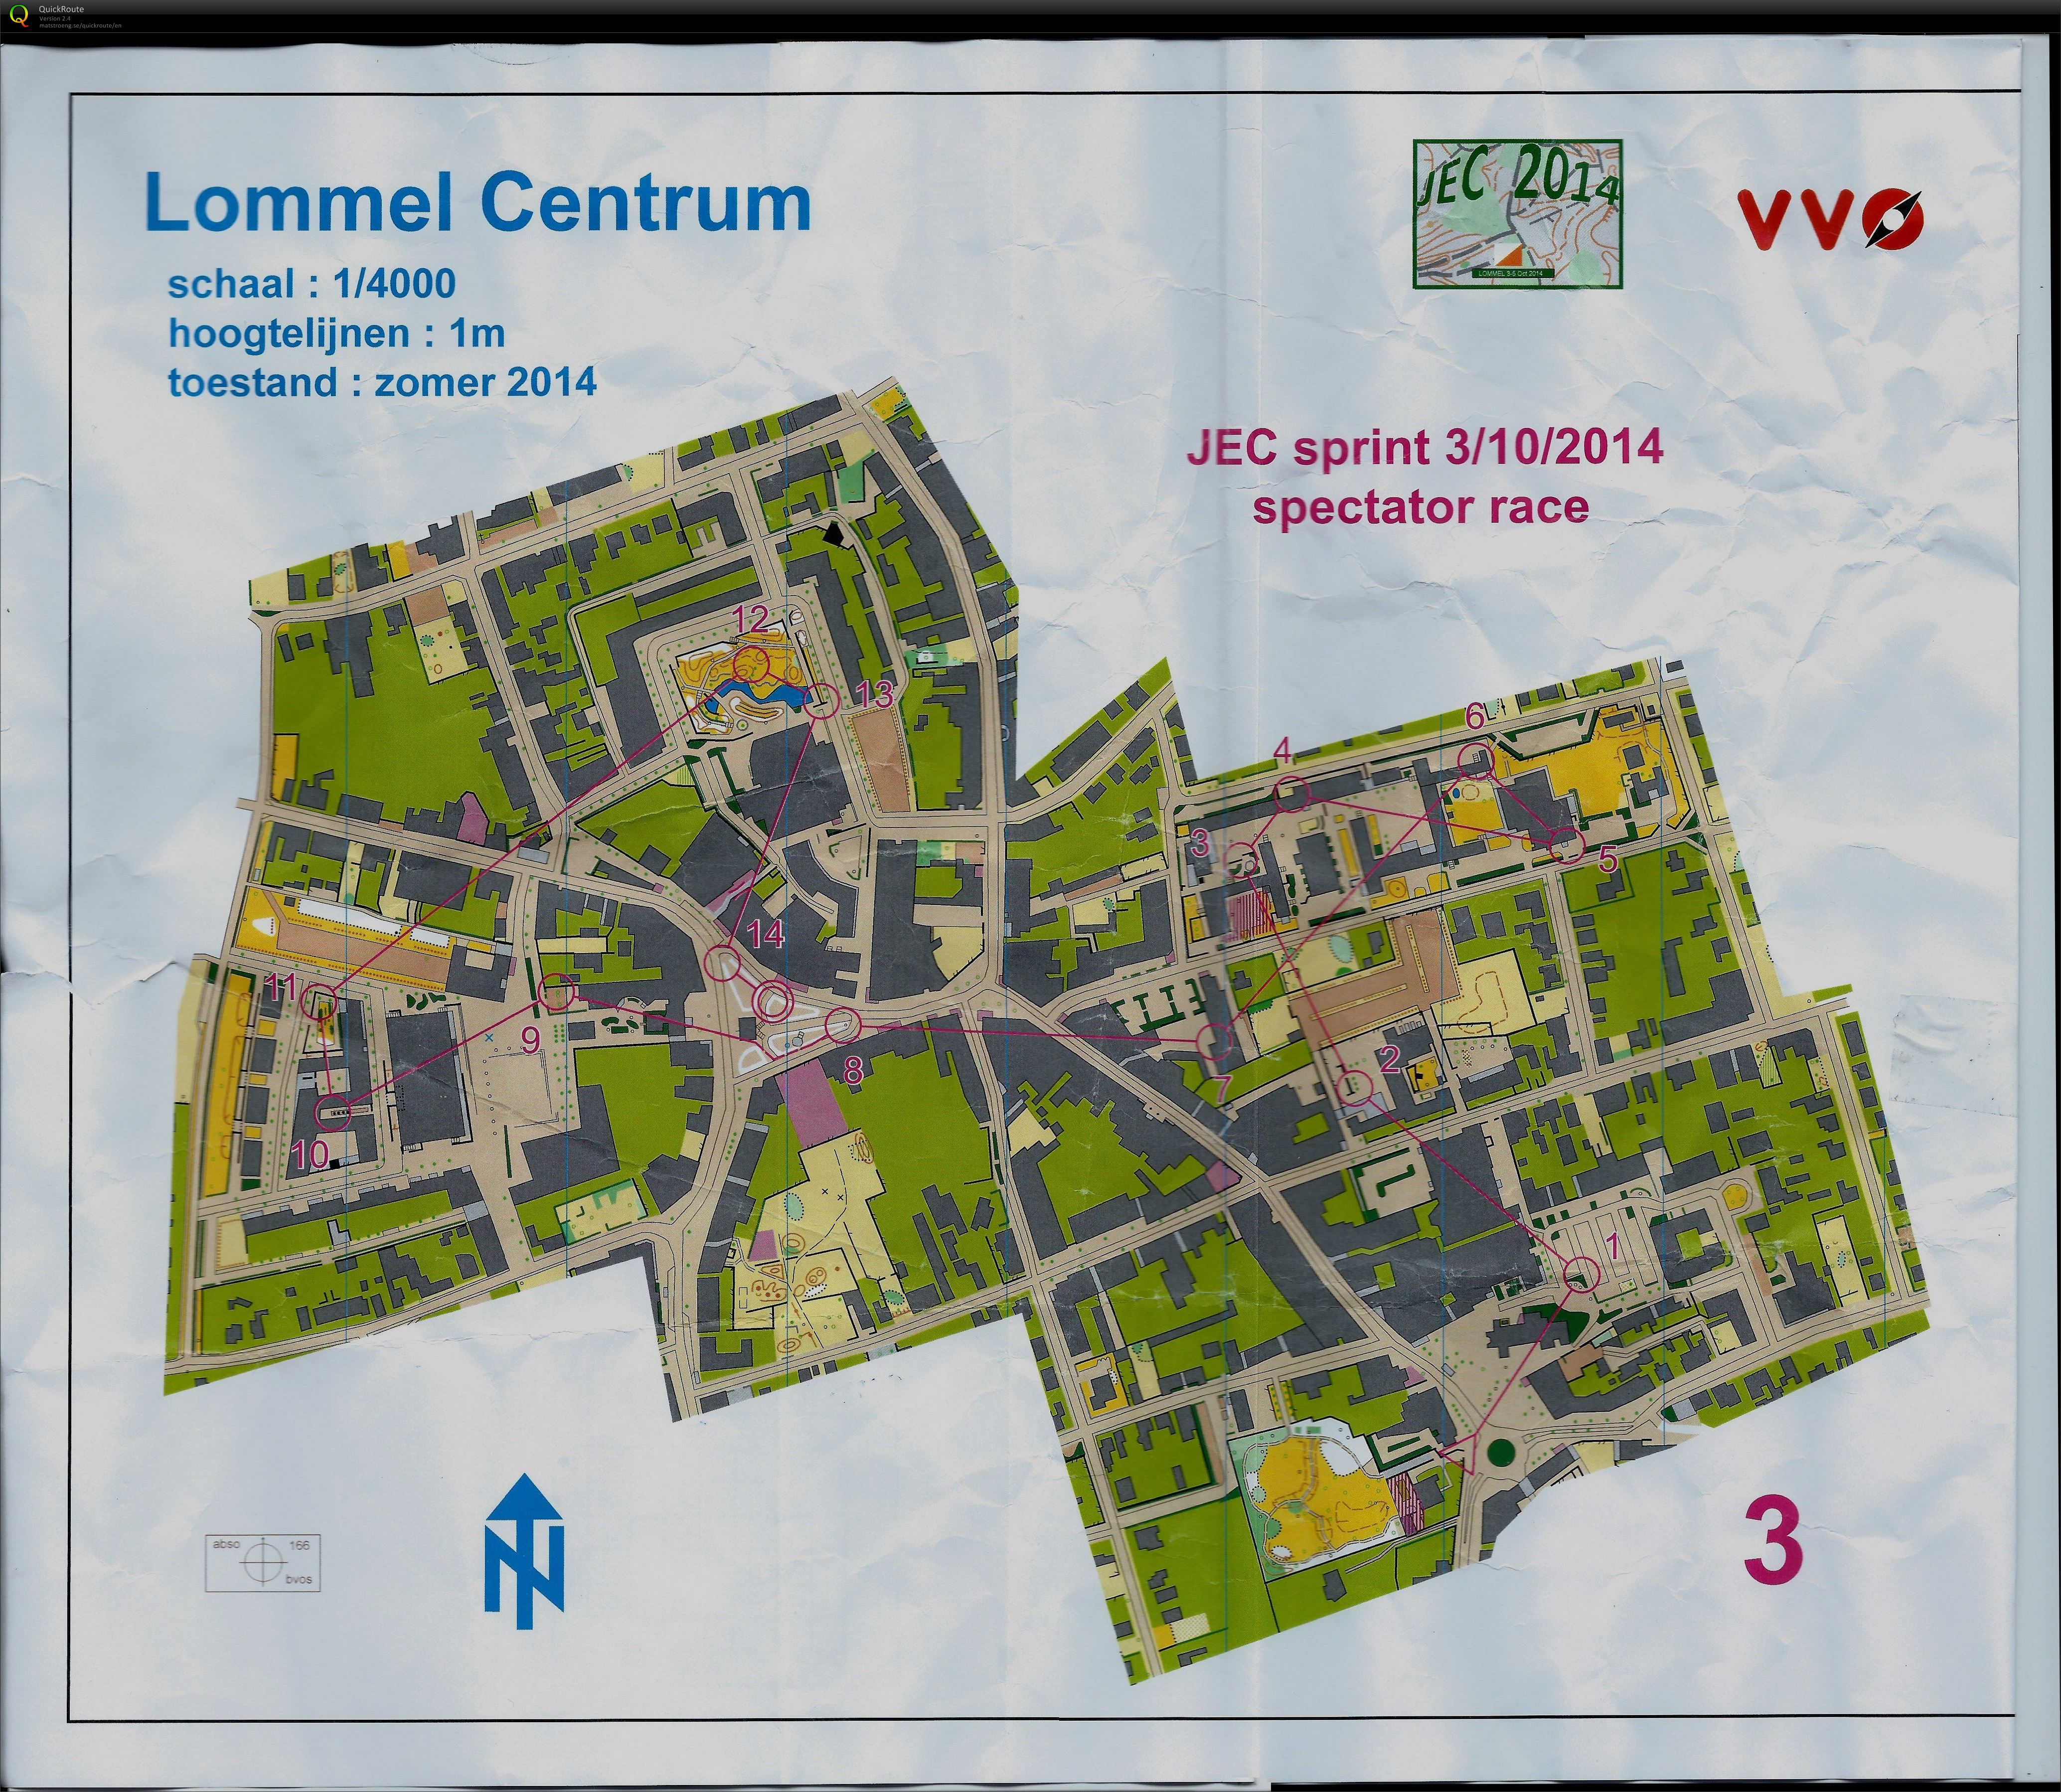 Lommel centrum (03.10.2014)